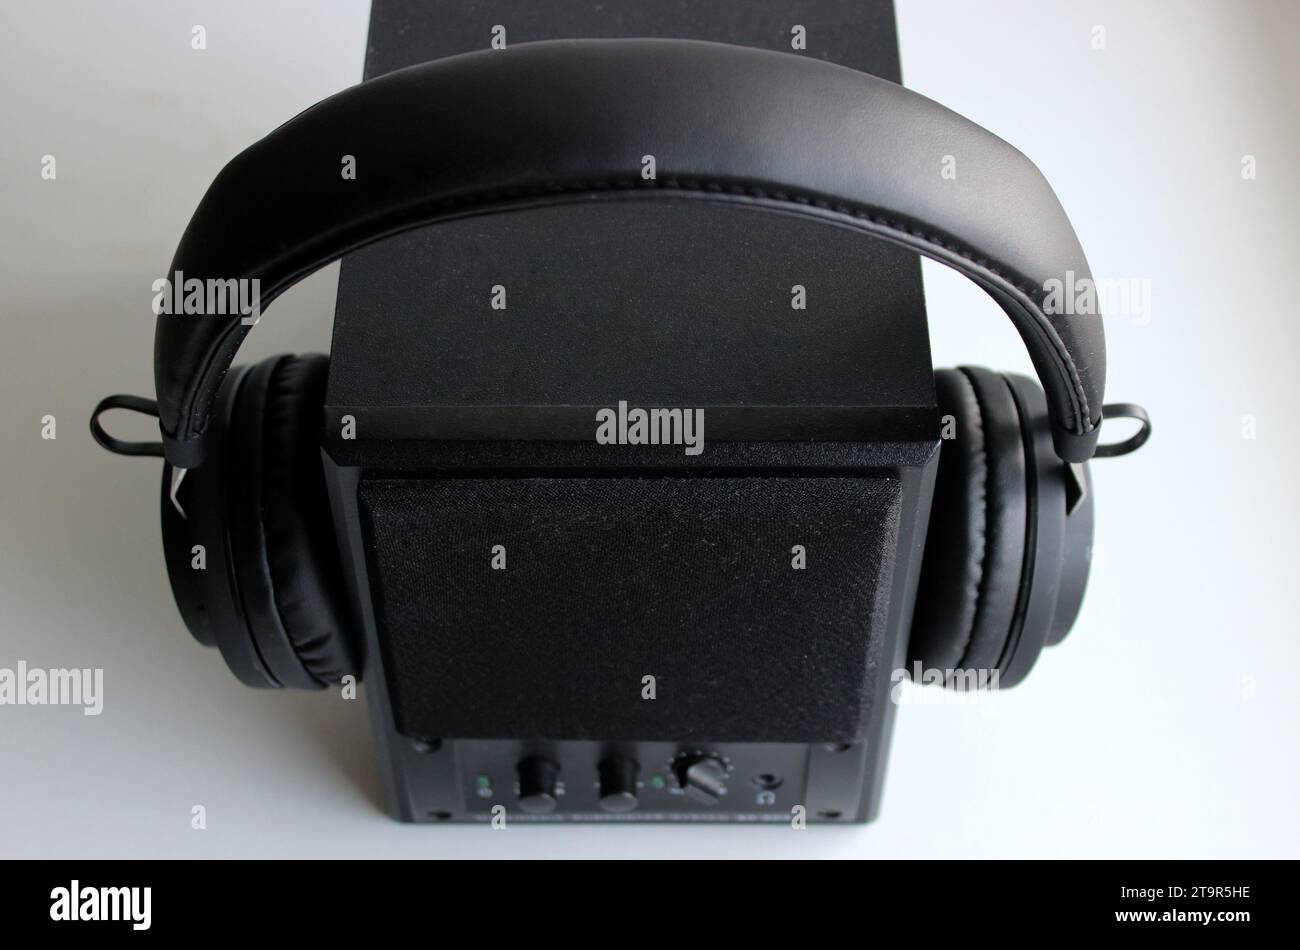 Altoparlante audio in legno nero con cuffie wireless isolate sulla vista superiore bianca Foto Stock